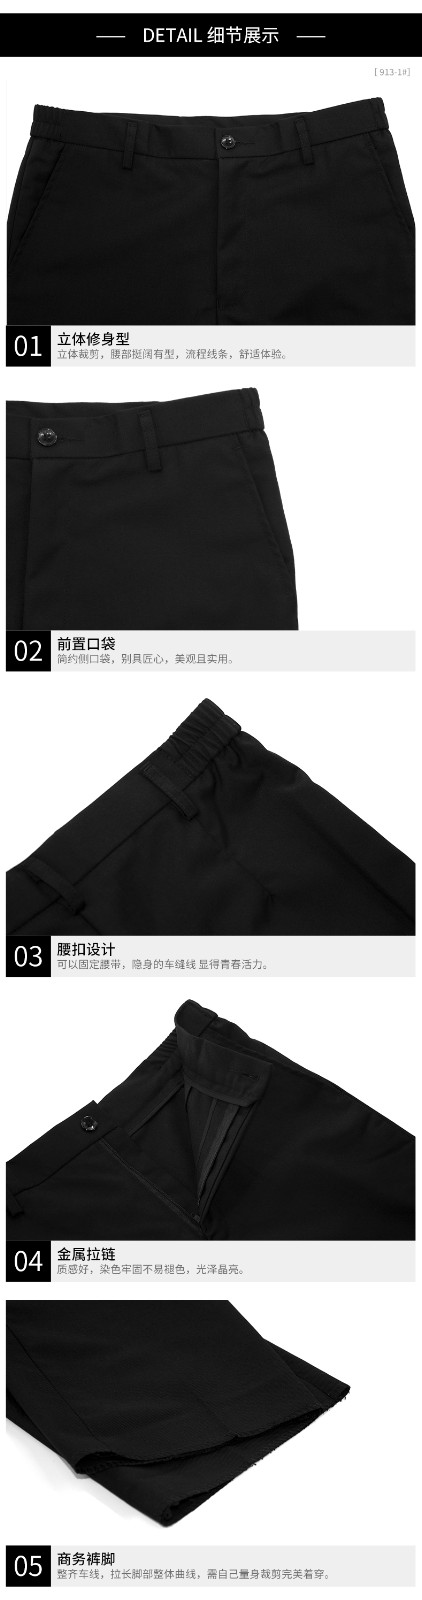 男女西裤 男110-1  女913-1(图10)